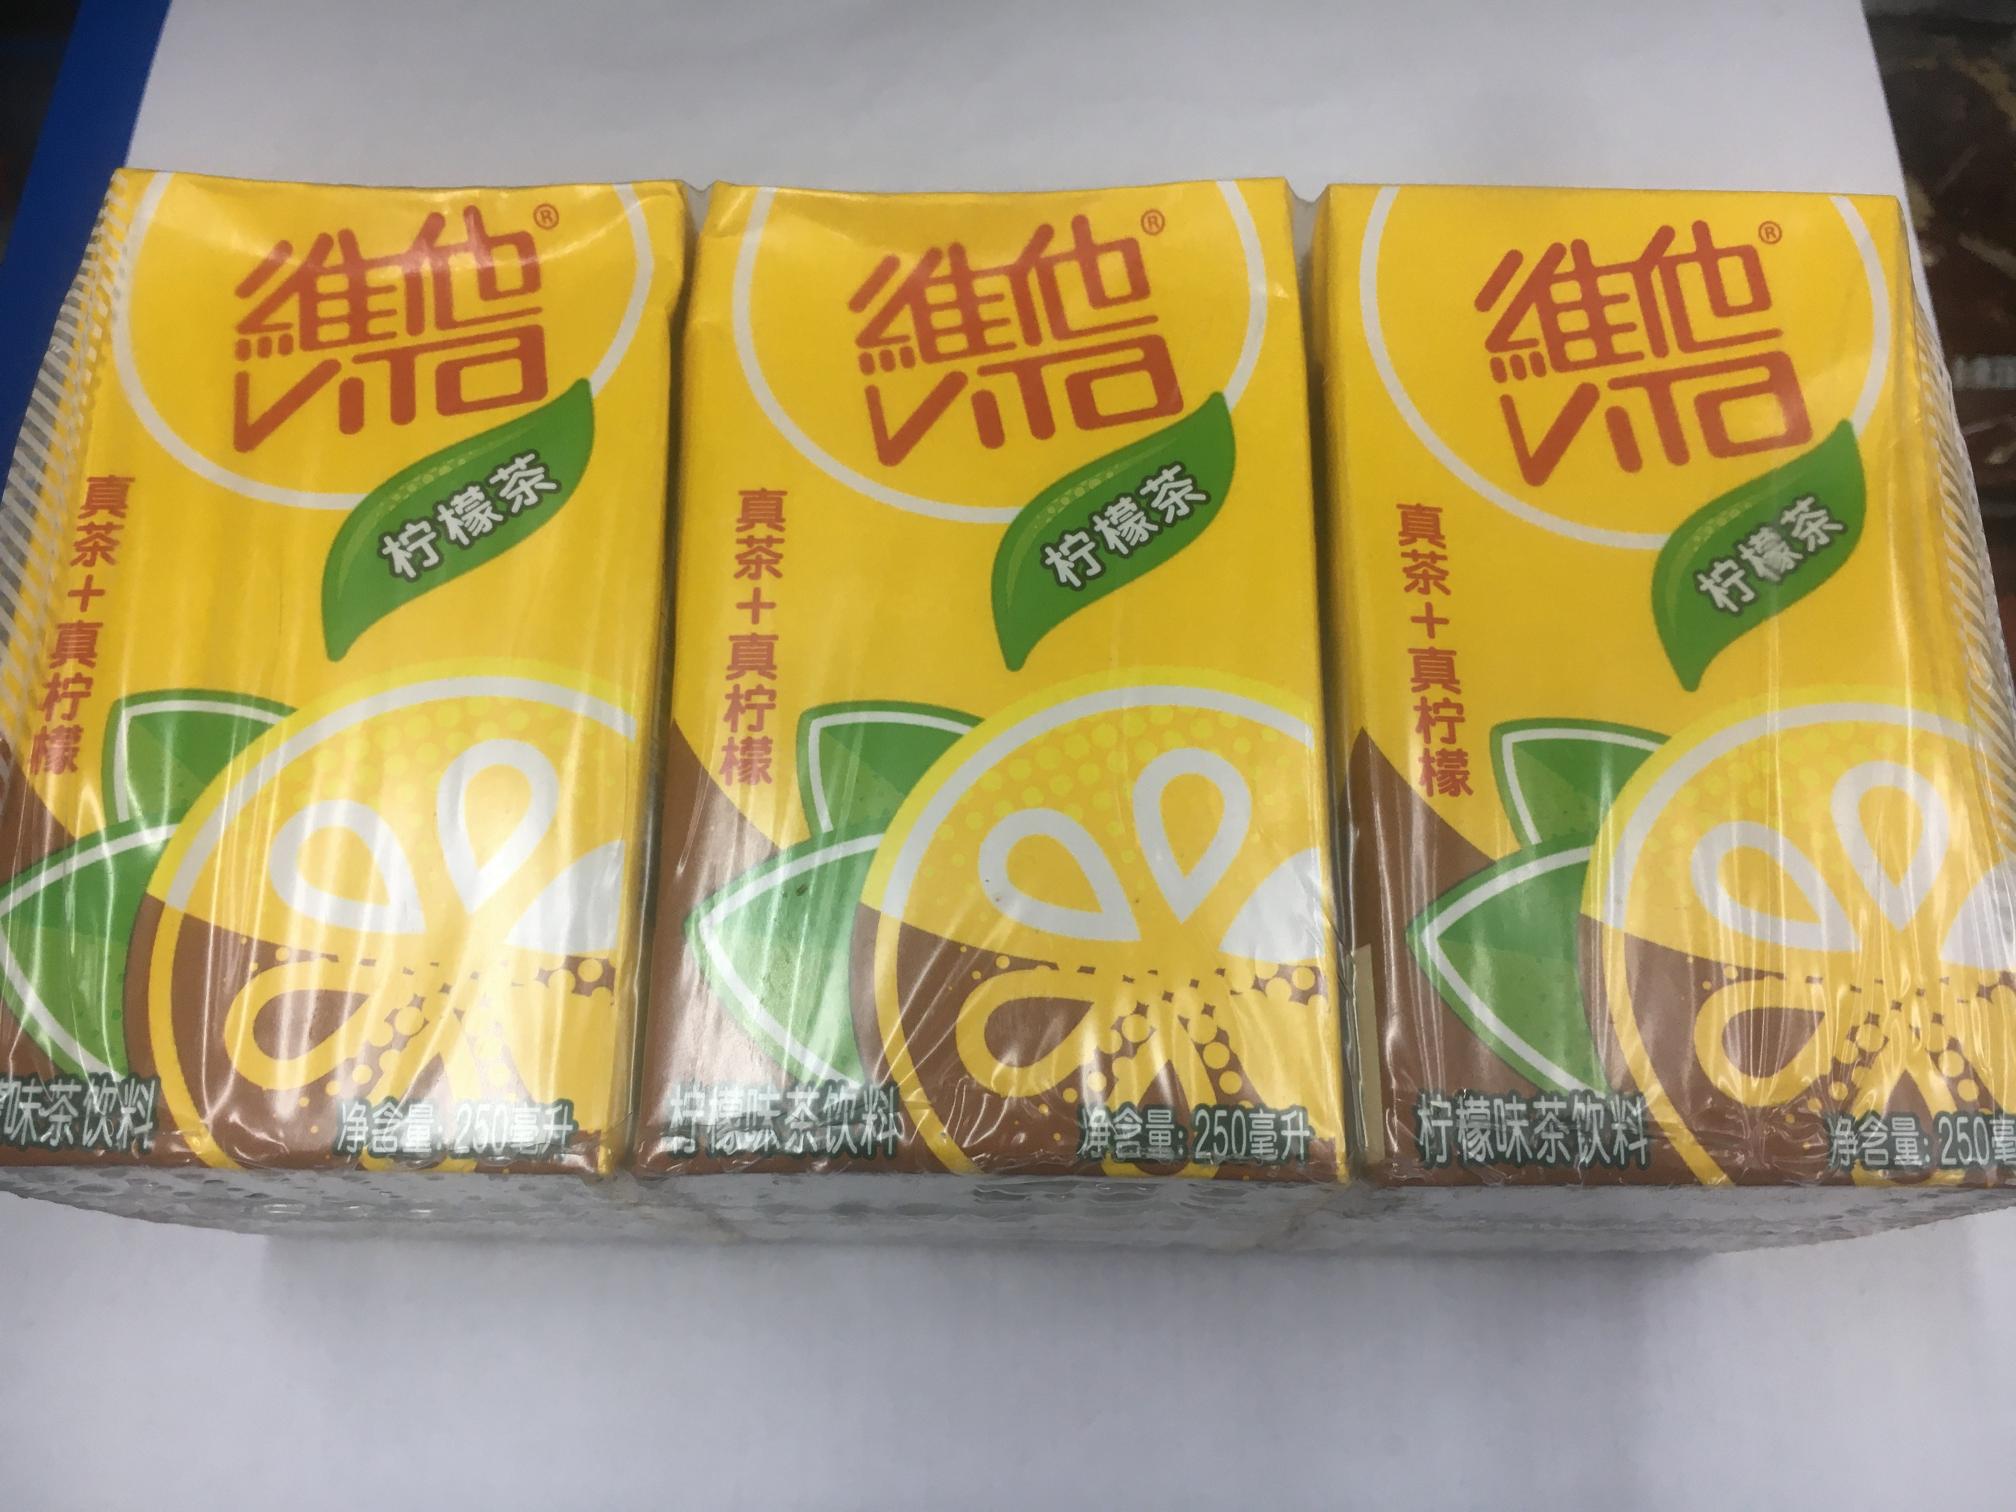 维他柠檬茶250ml/瓶×6盒 柠檬味